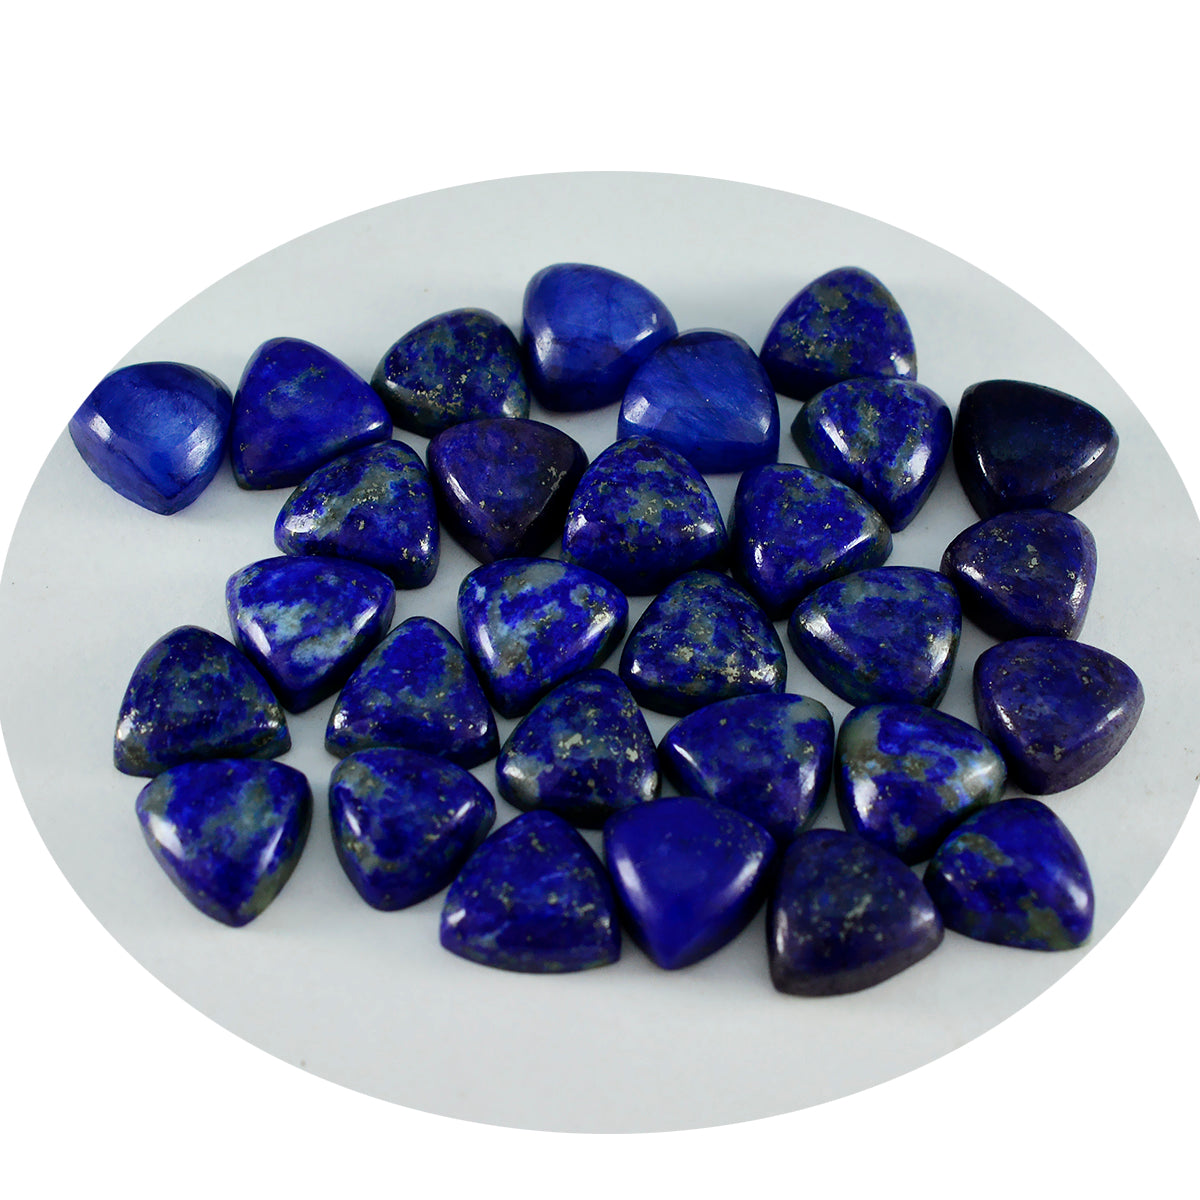 Riyogems 1PC Blauwe Lapis Lazuli Cabochon 6x6 mm Biljoen Vorm mooie Kwaliteit Losse Edelstenen